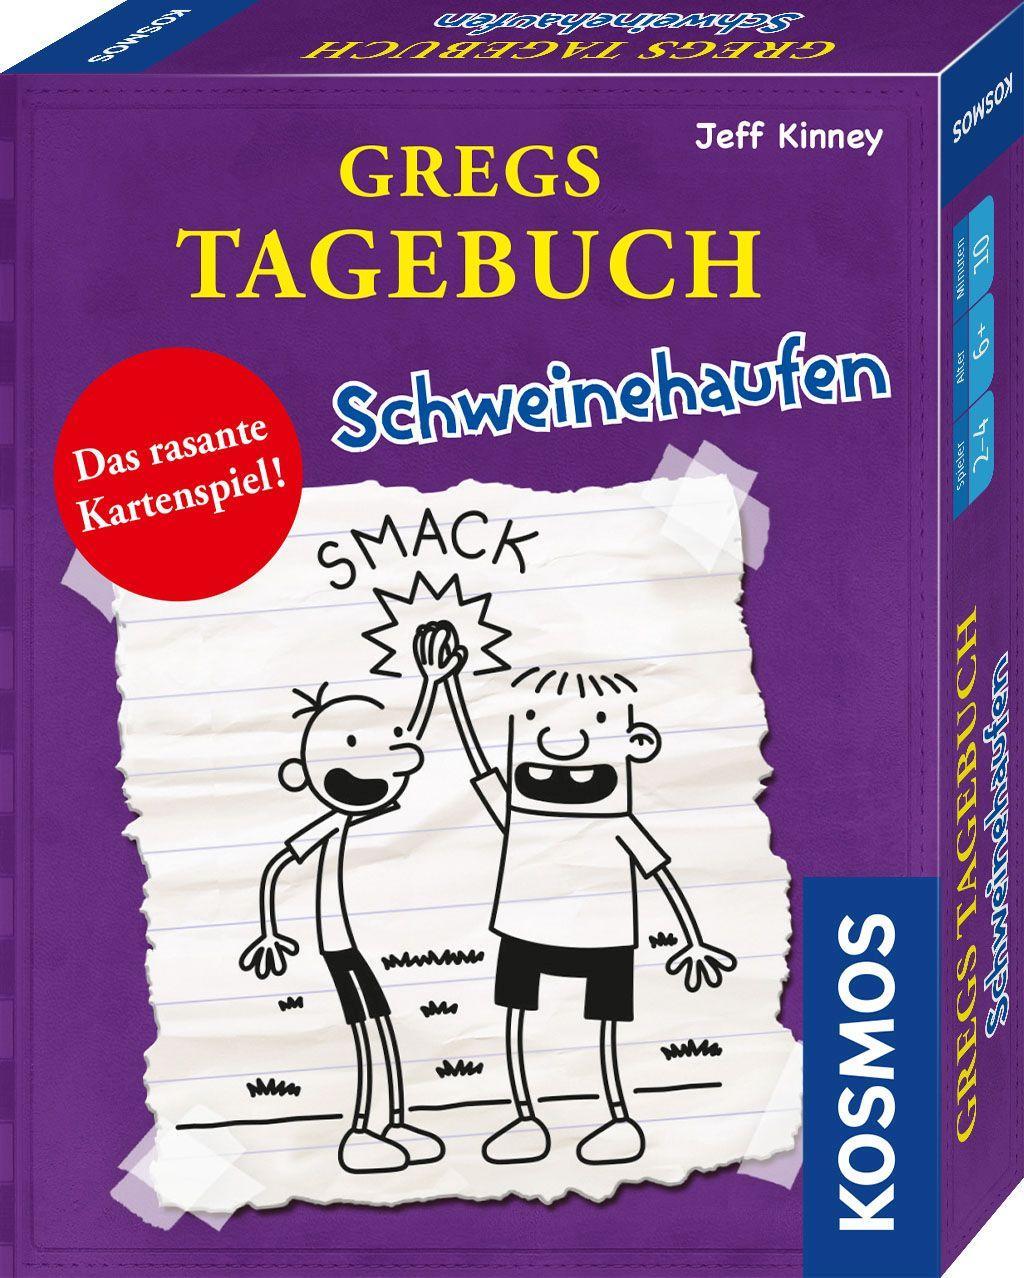 Hra/Hračka Kartenspiel Gregs Tagebuch - Schweinehaufen 